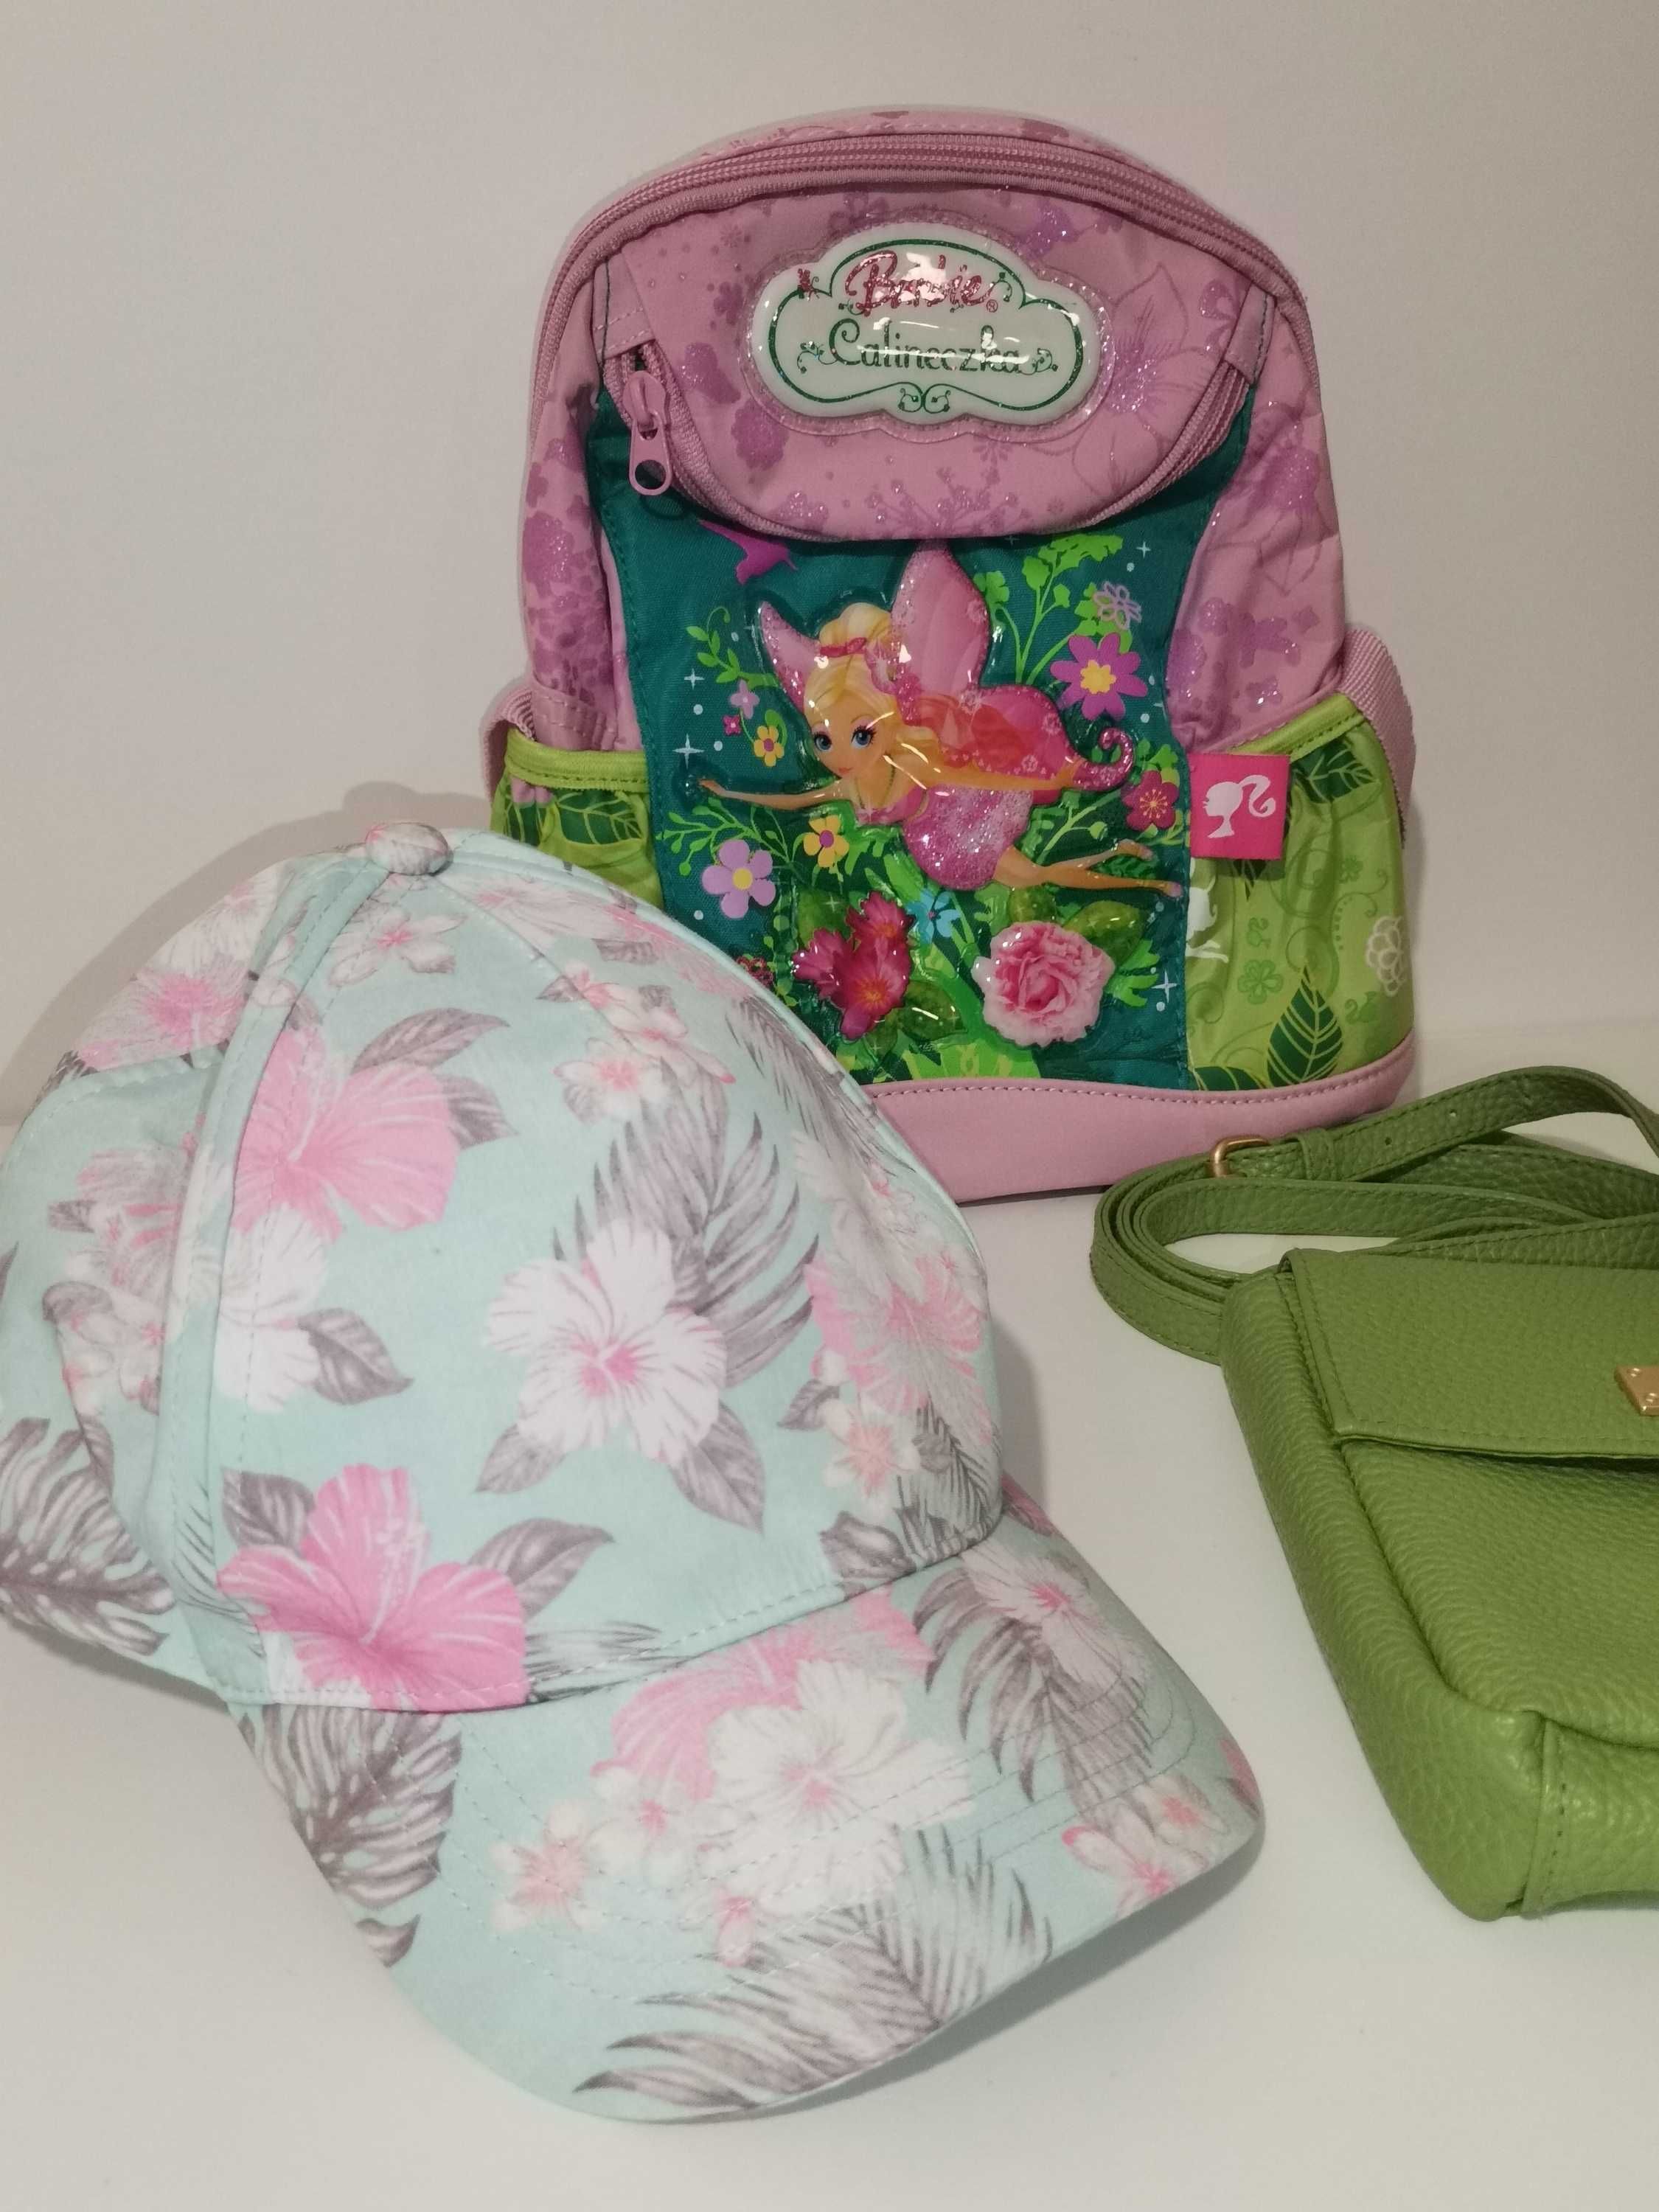 Komplet dla dziewczynki - plecak, torebka, czapka